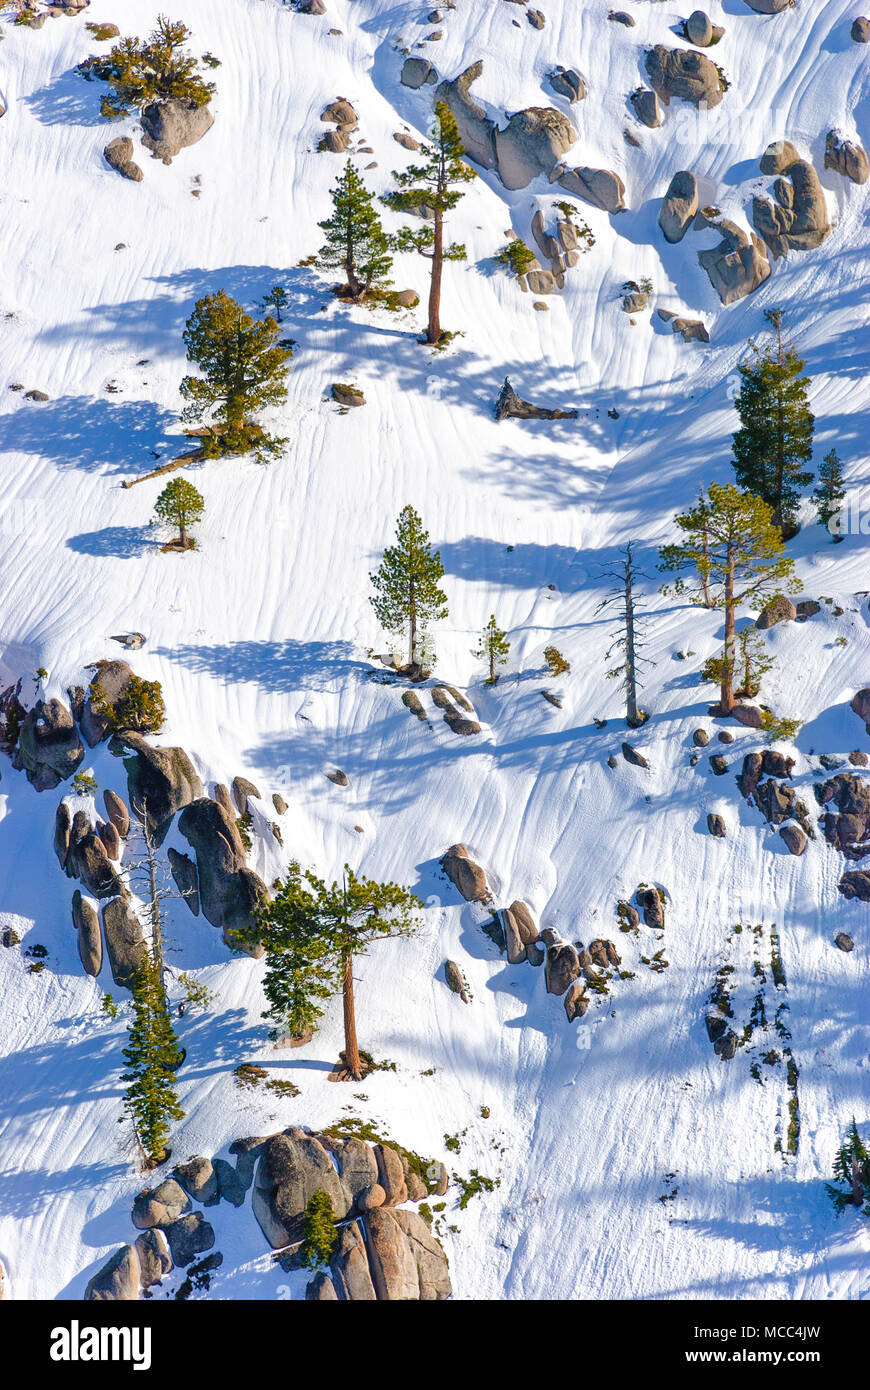 L'une des pentes à Squaw Valley, en Californie, pour ceux qui aiment le ski extrême entre des rochers et des arbres. Banque D'Images